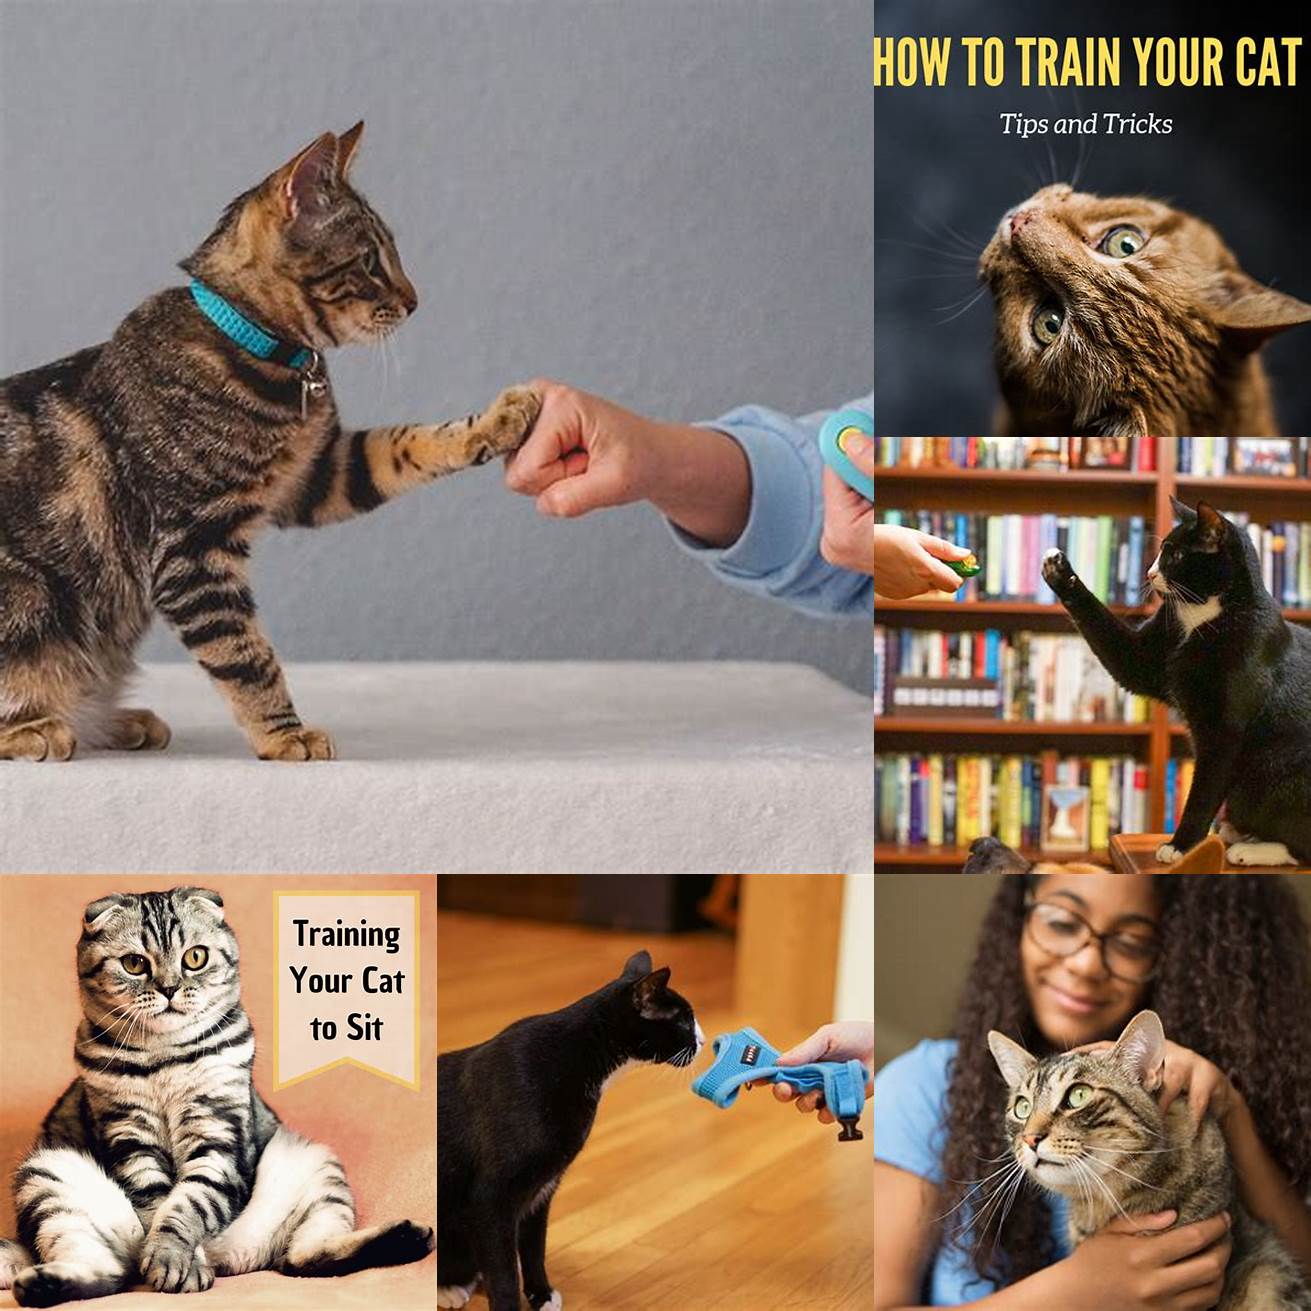 Training your cat